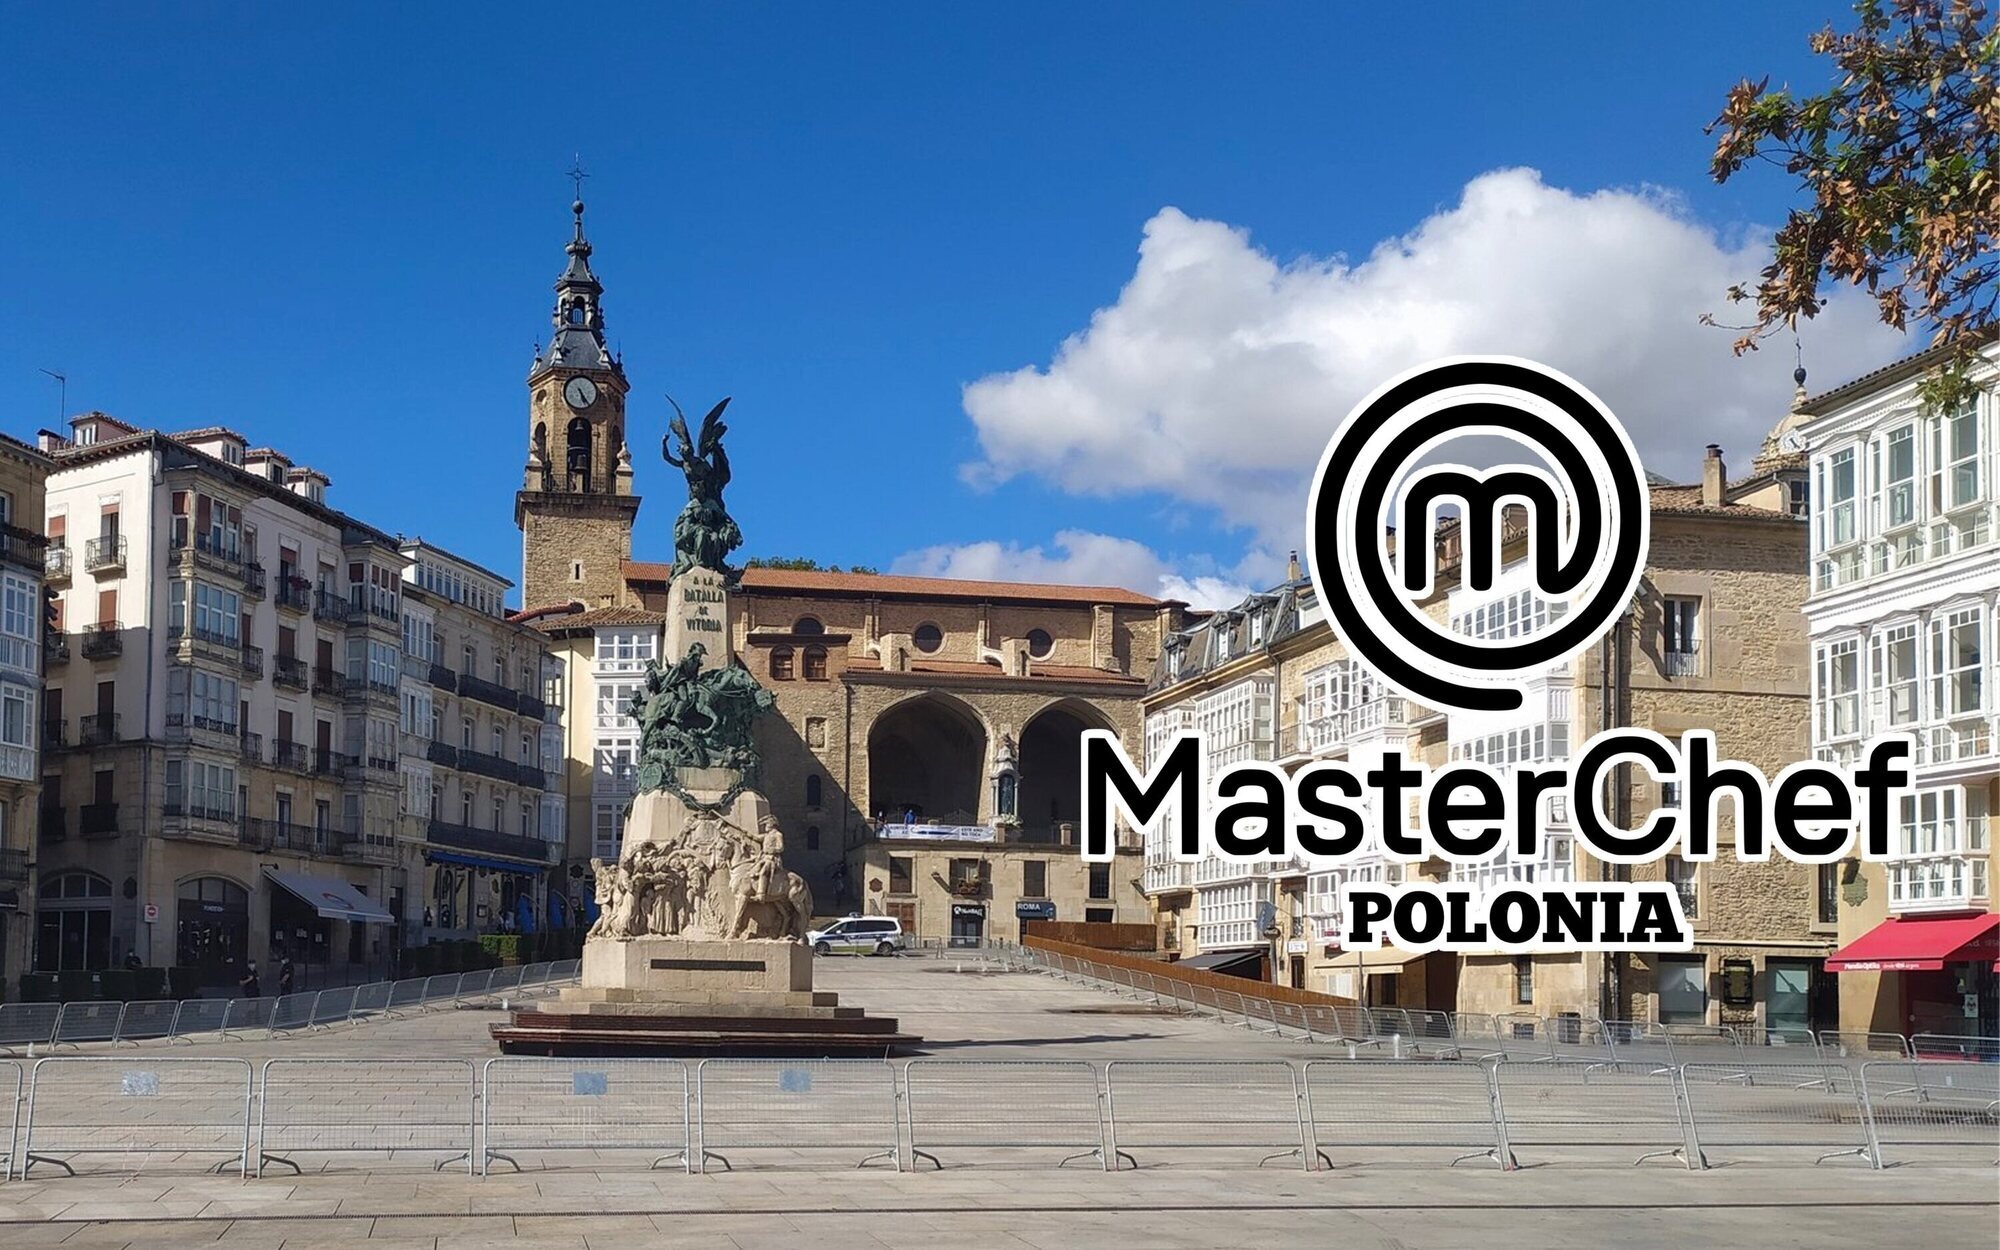 'MasterChef Polonia' elige Vitoria, donde nunca ha estado 'MasterChef España', para una de sus pruebas